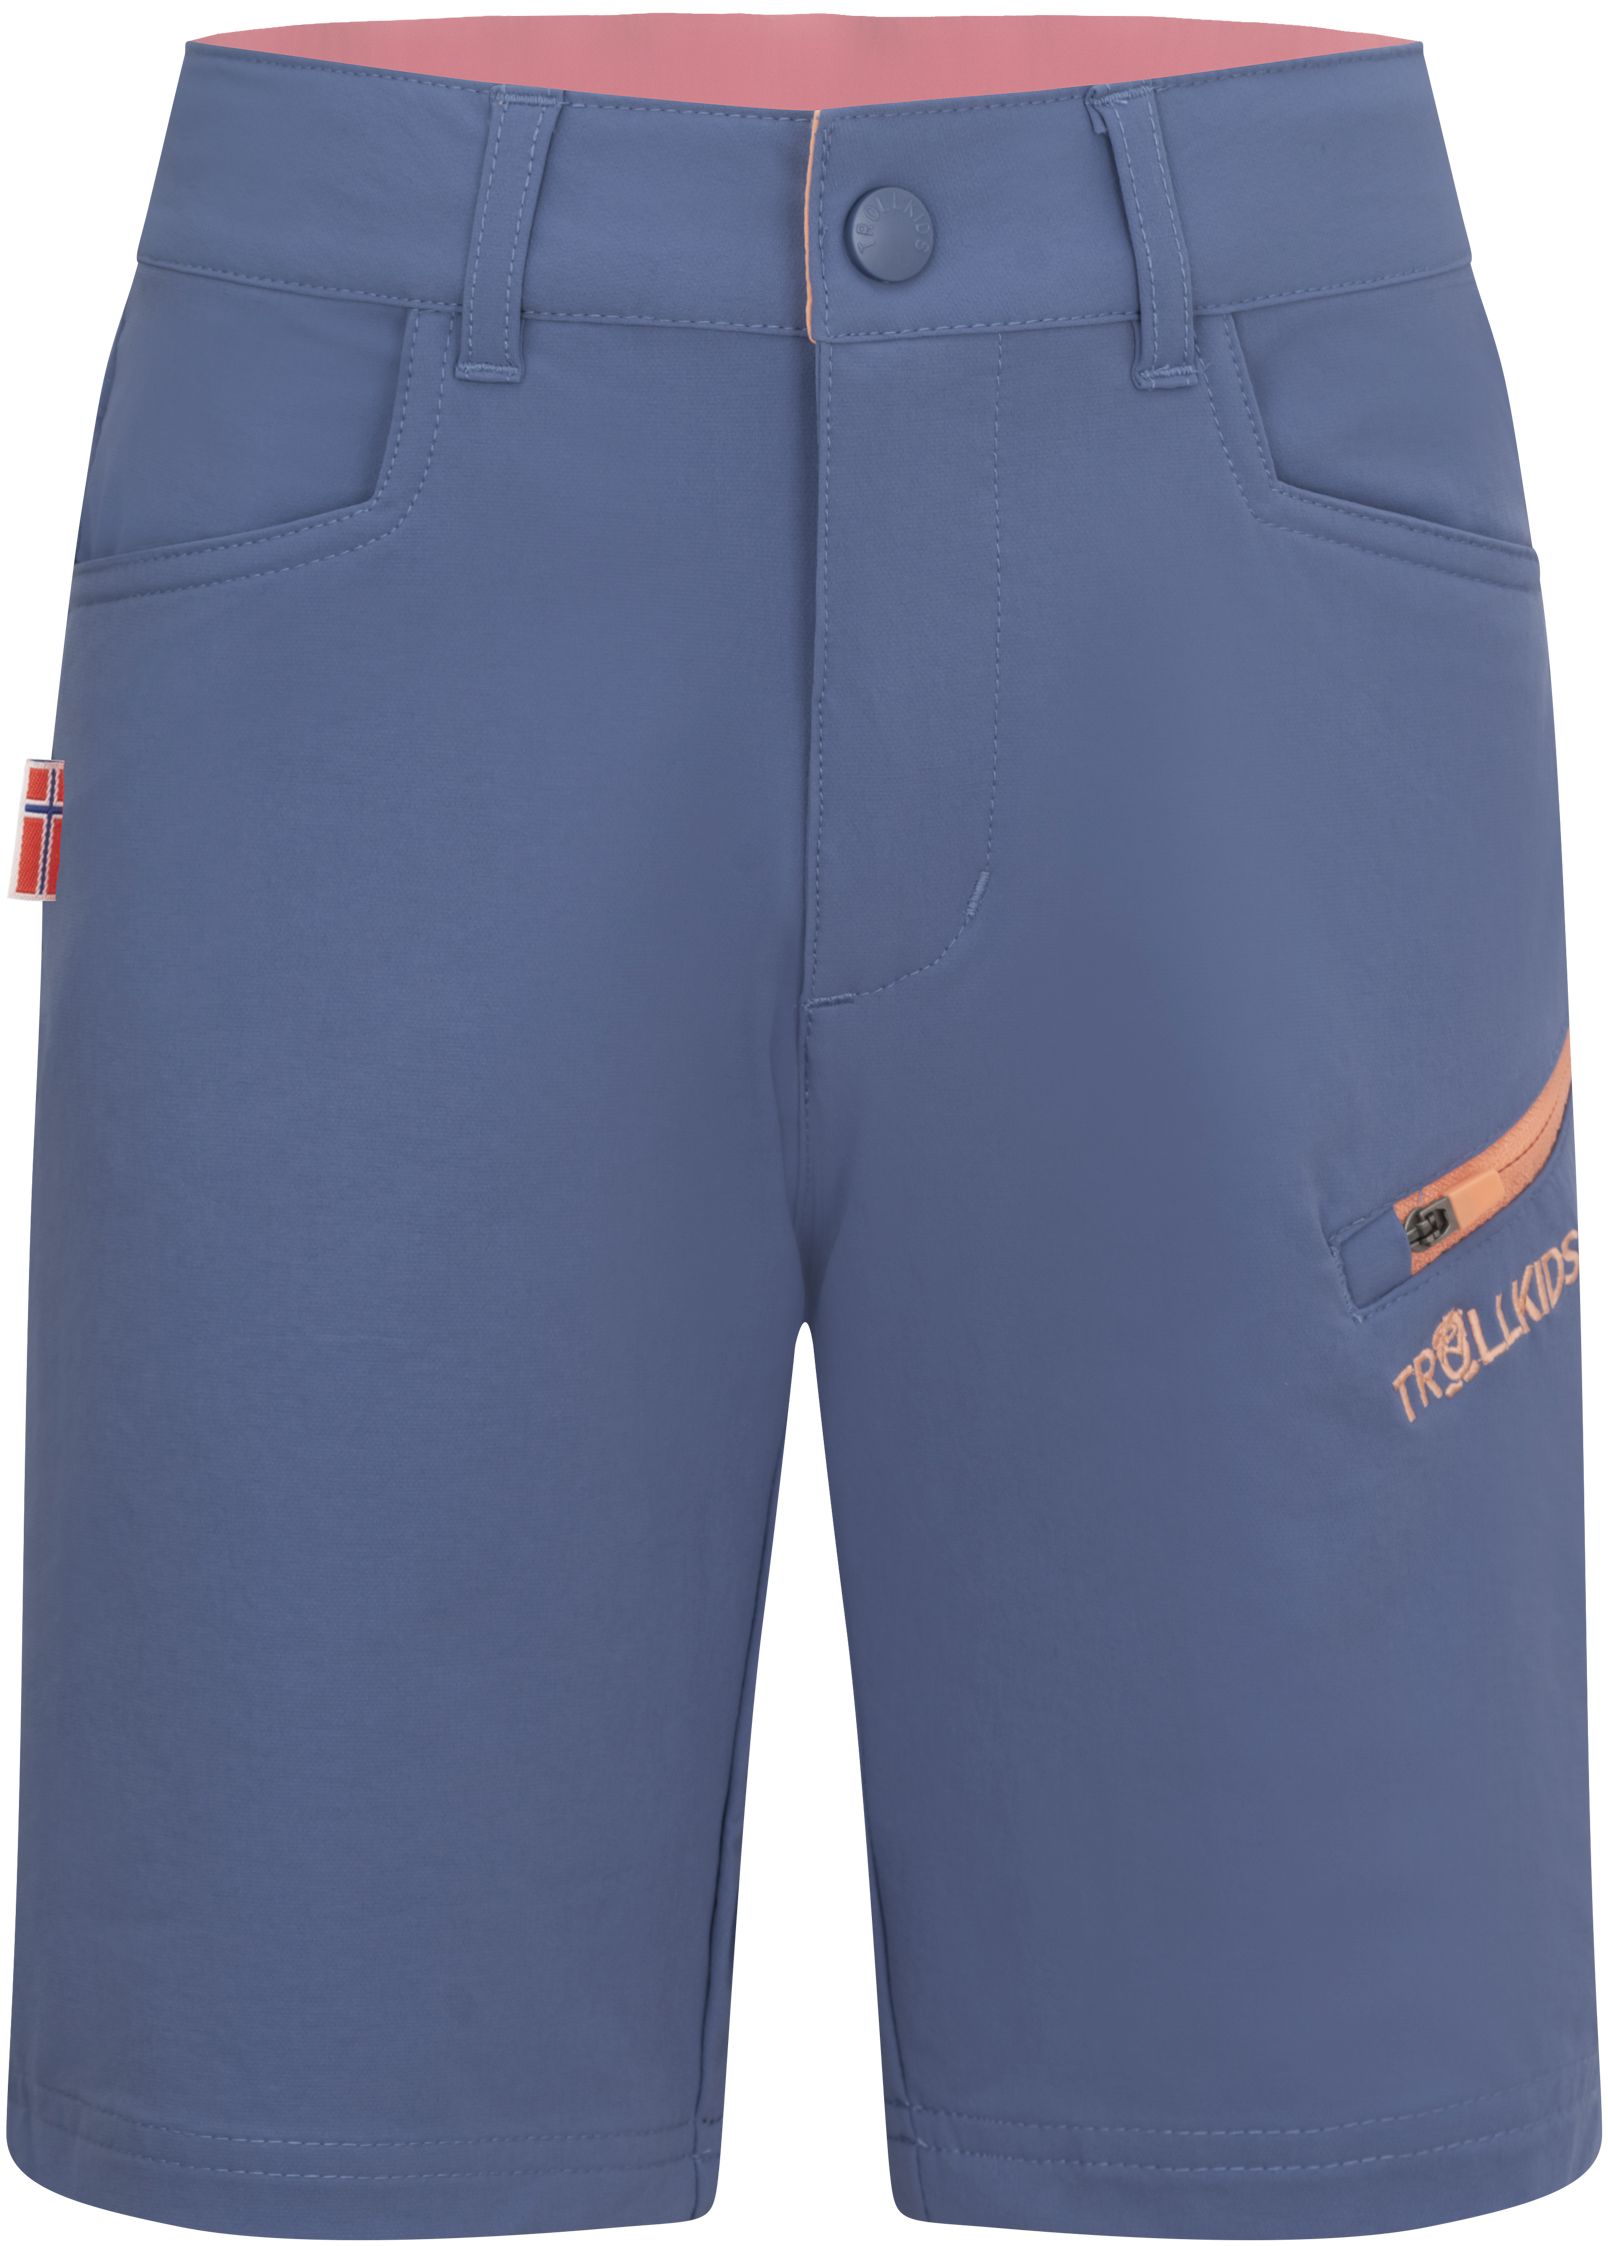 Trollkids Haugesund Shorts Lotus Blue/Dahlia